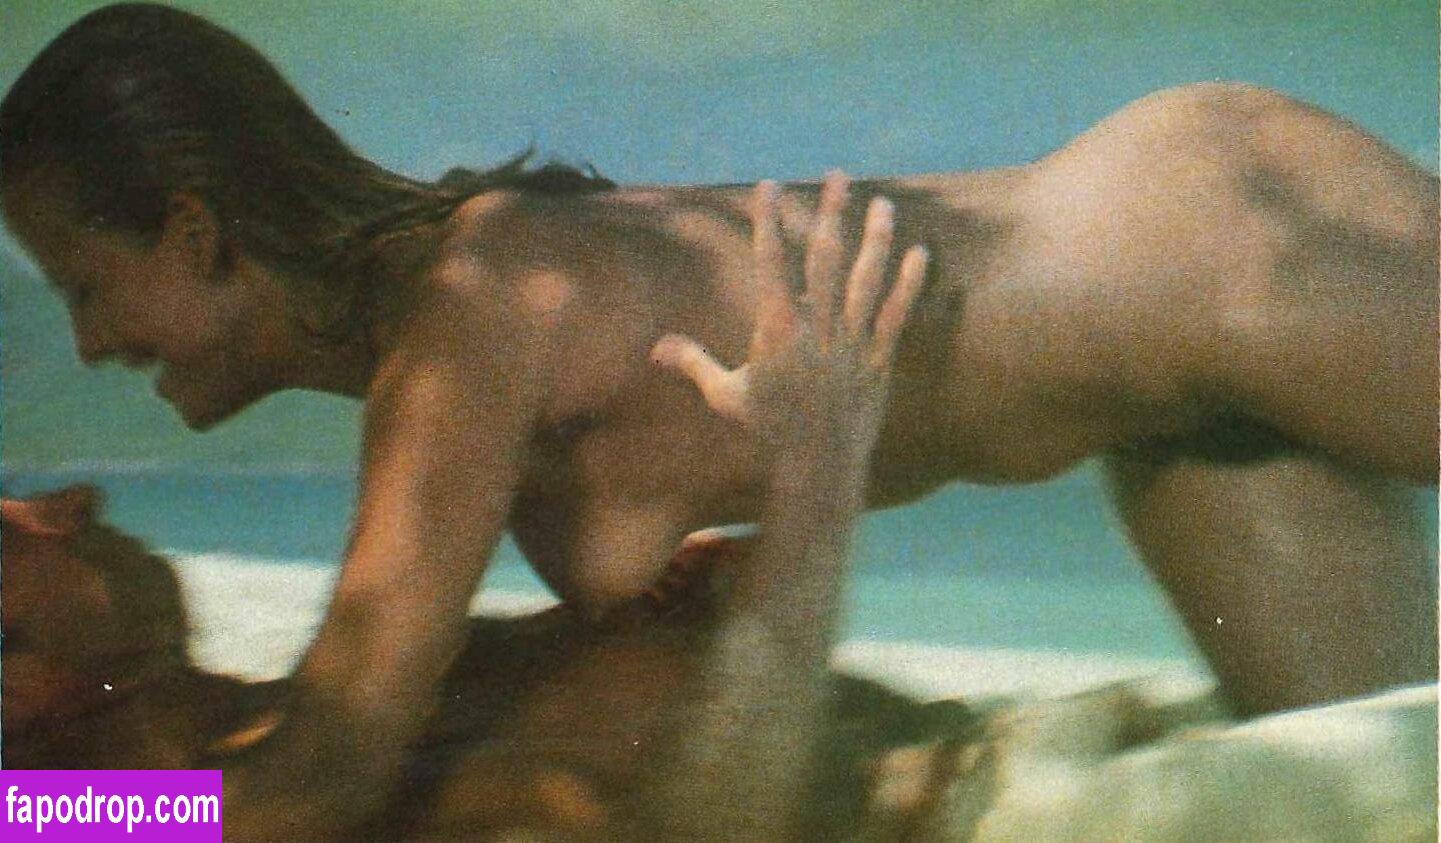 Sophie Marceau / sophiemarceau leak of nude photo #0146 from OnlyFans or Patreon